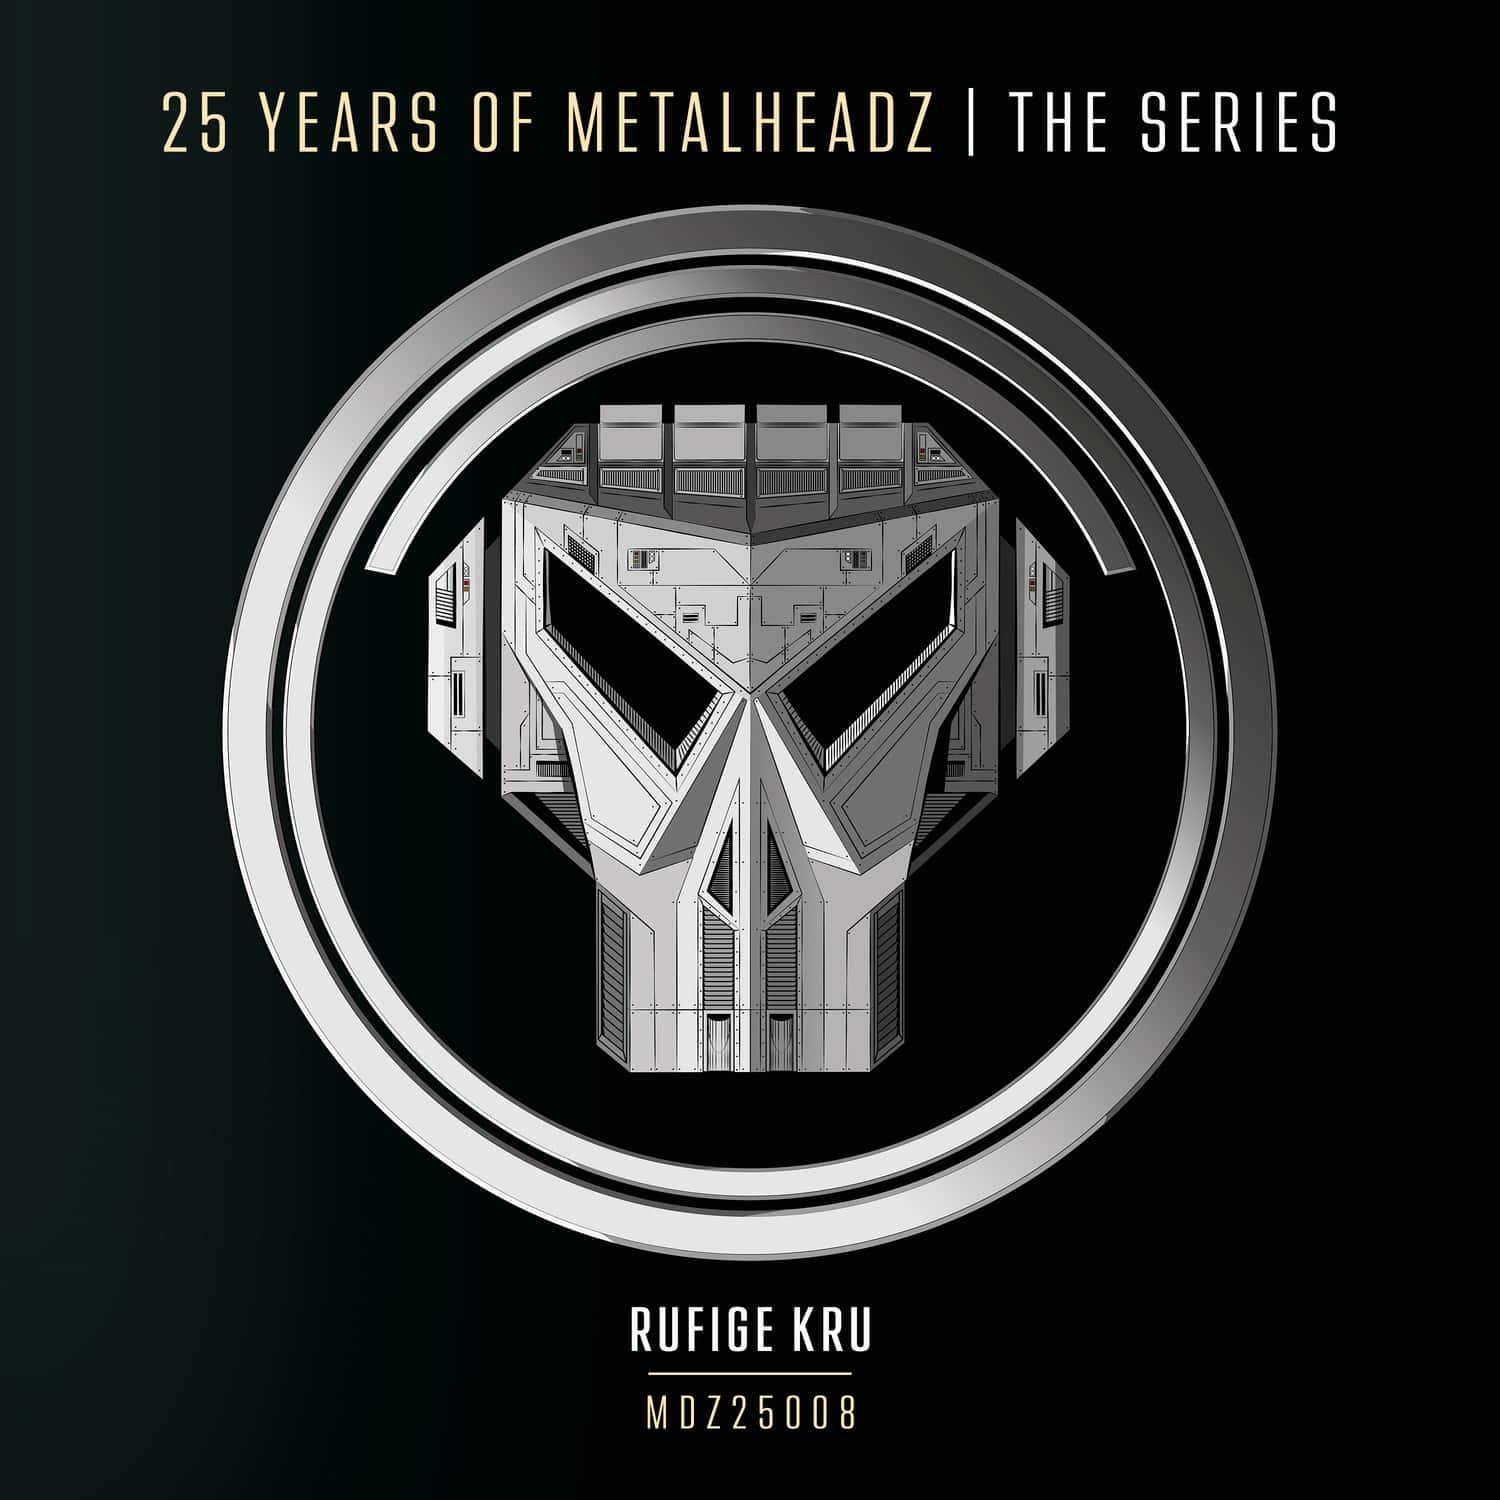 Rufige Kru - 25 YEARS OF METALHEADZ PART. 8